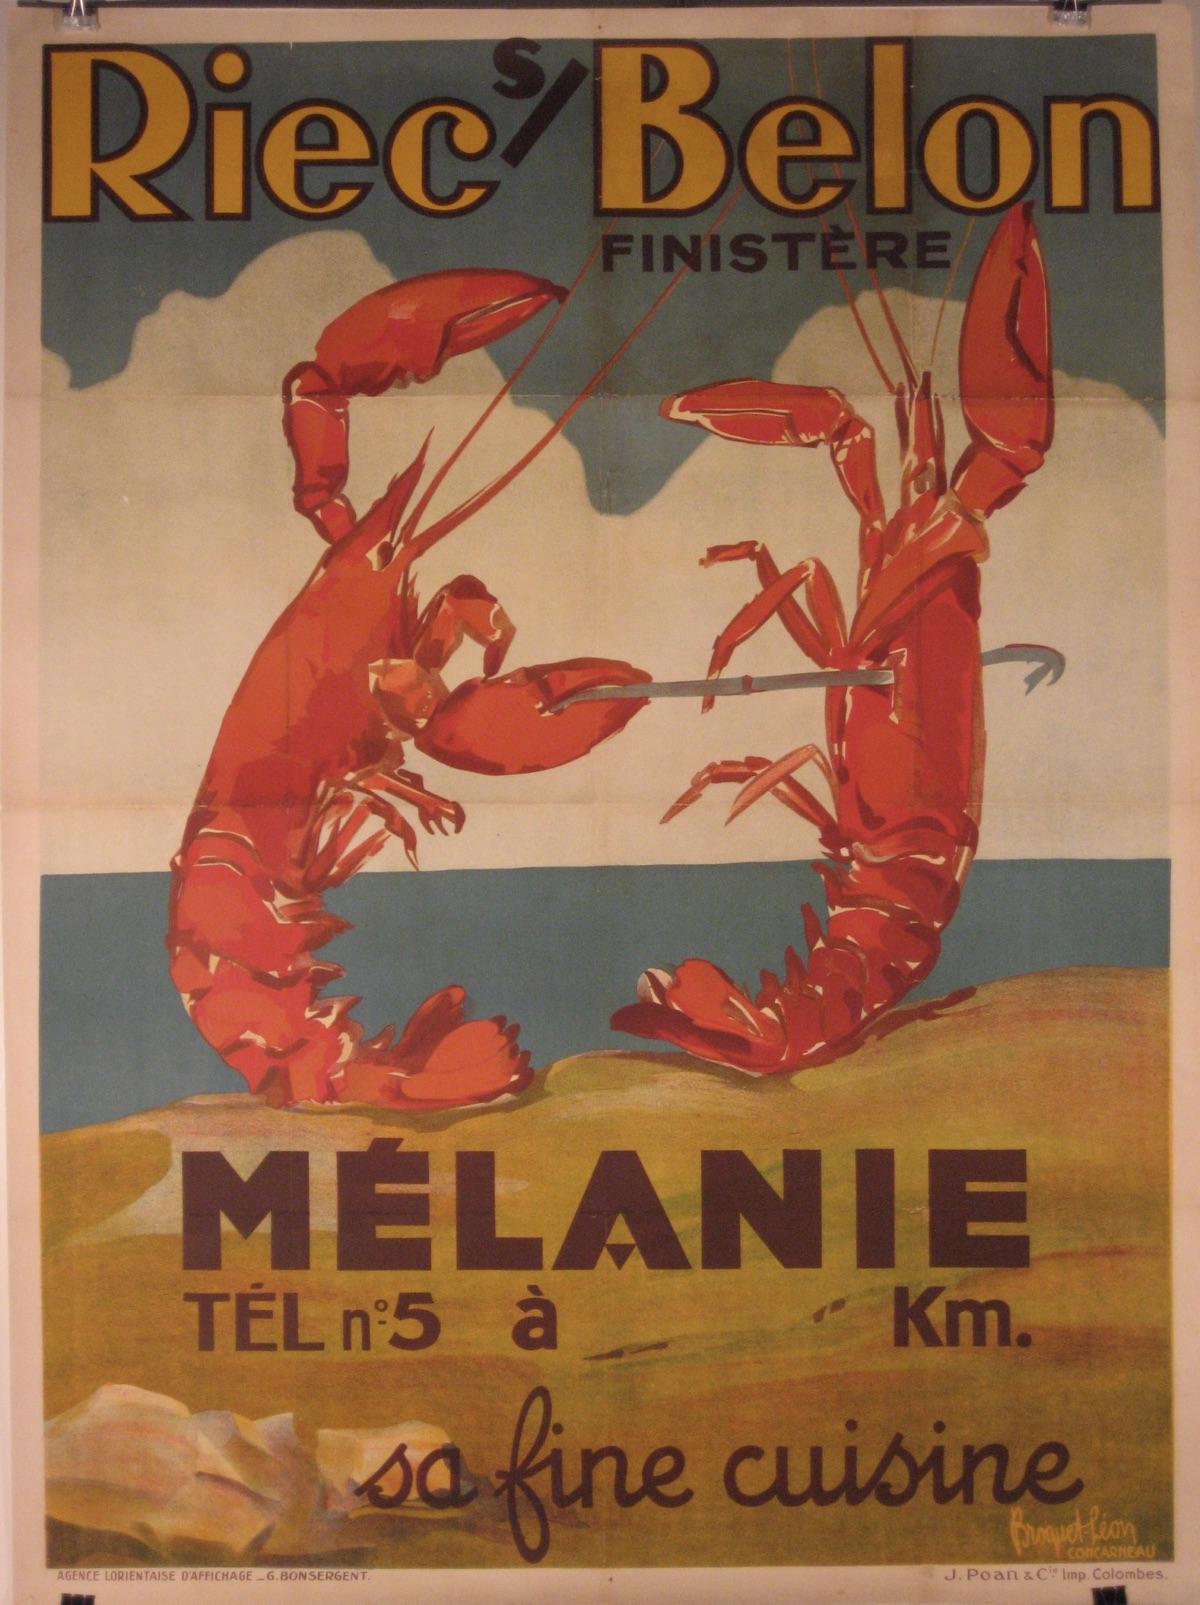 Künstler: Leon Esperance Broquet (Französisch 1869 - 1936)

Entstehungszeit: ca. 1930

Medium: Original Steinlithographie Vintage Poster

Größe: 47